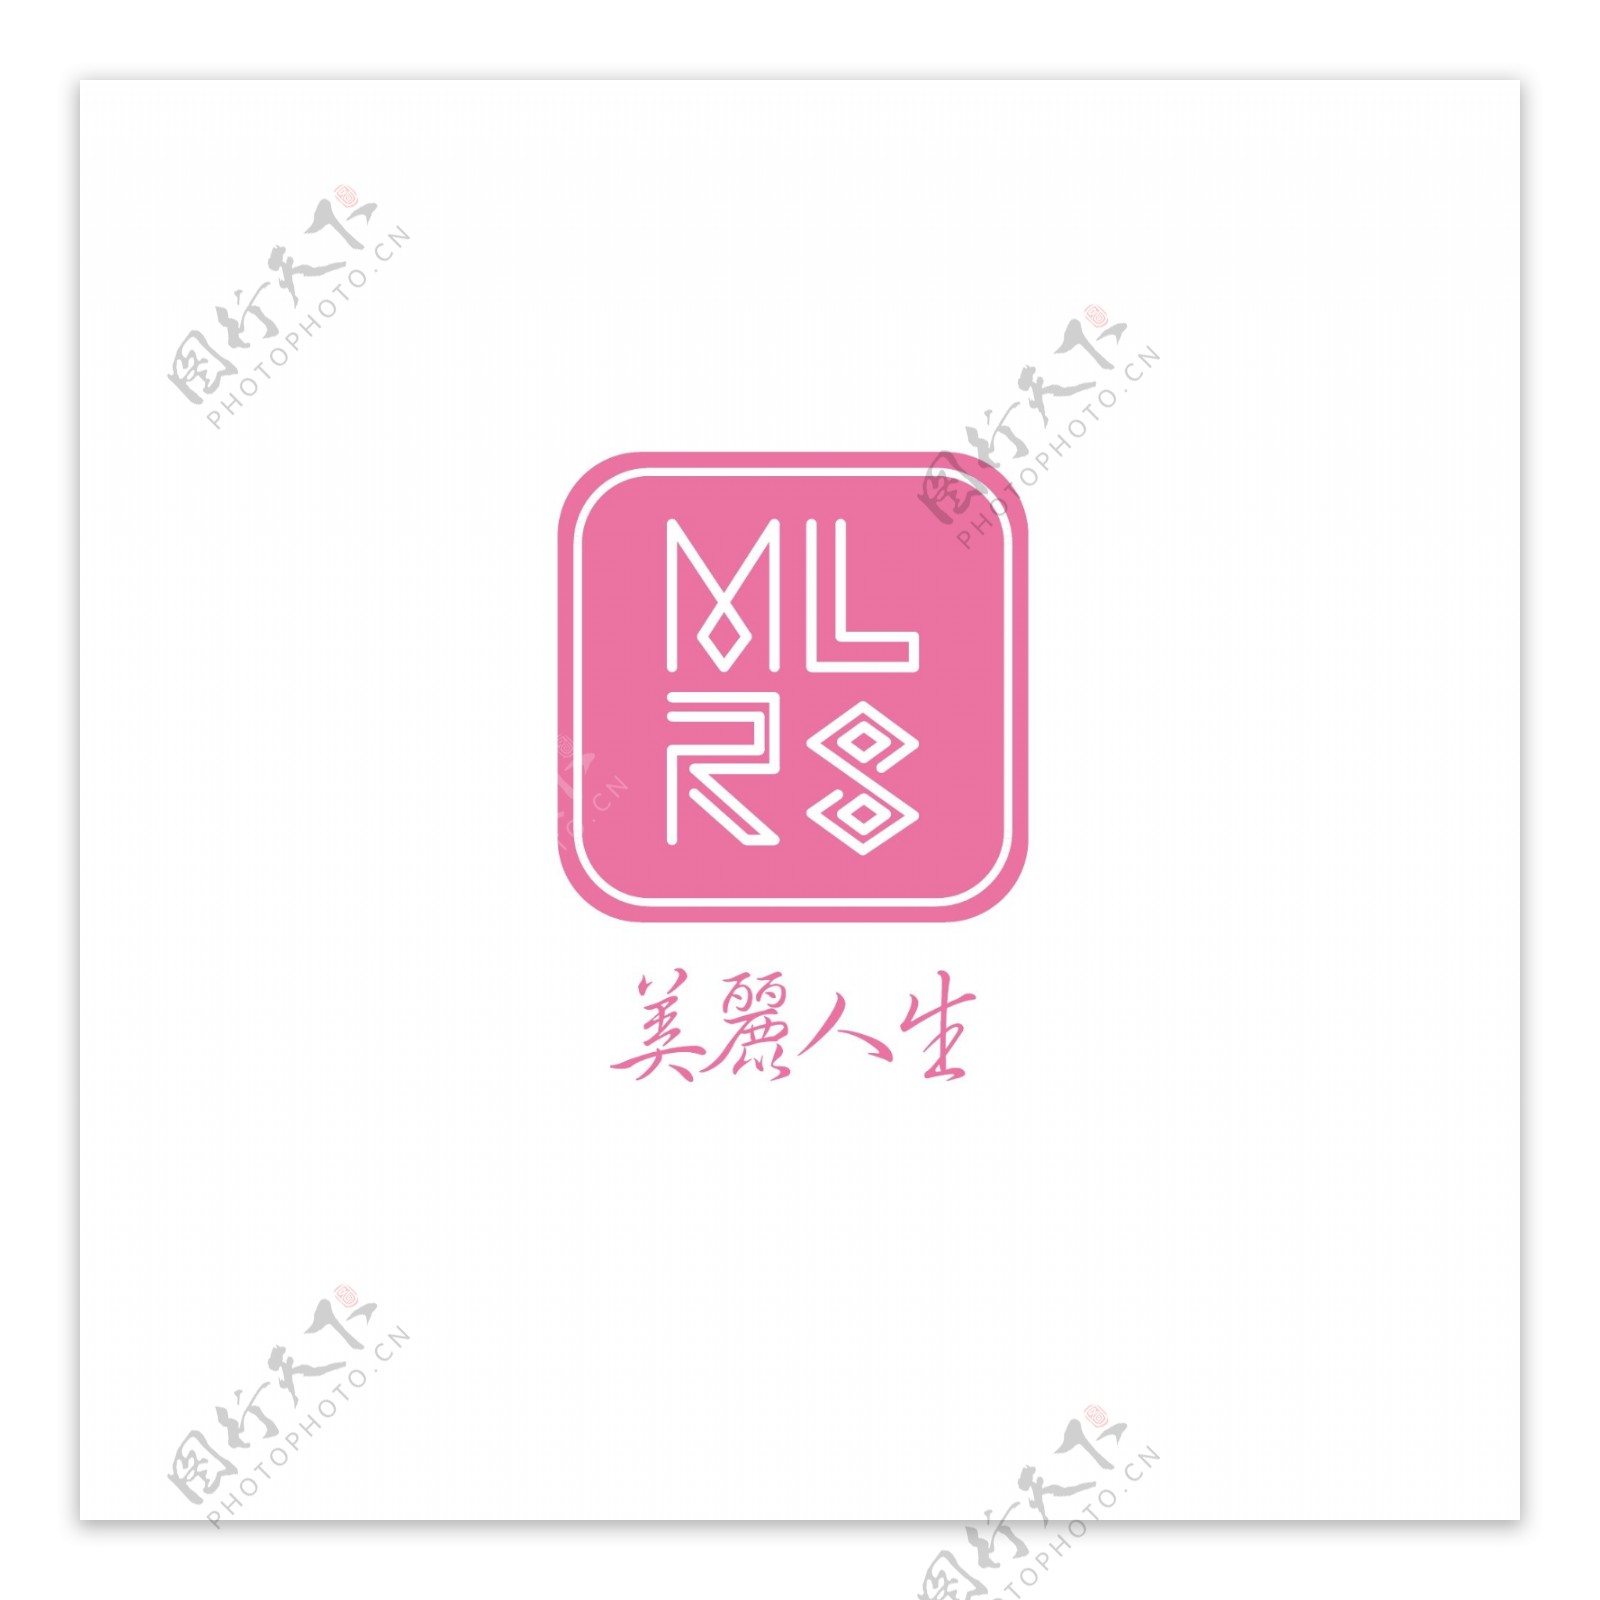 MLRS字母UI图标设计